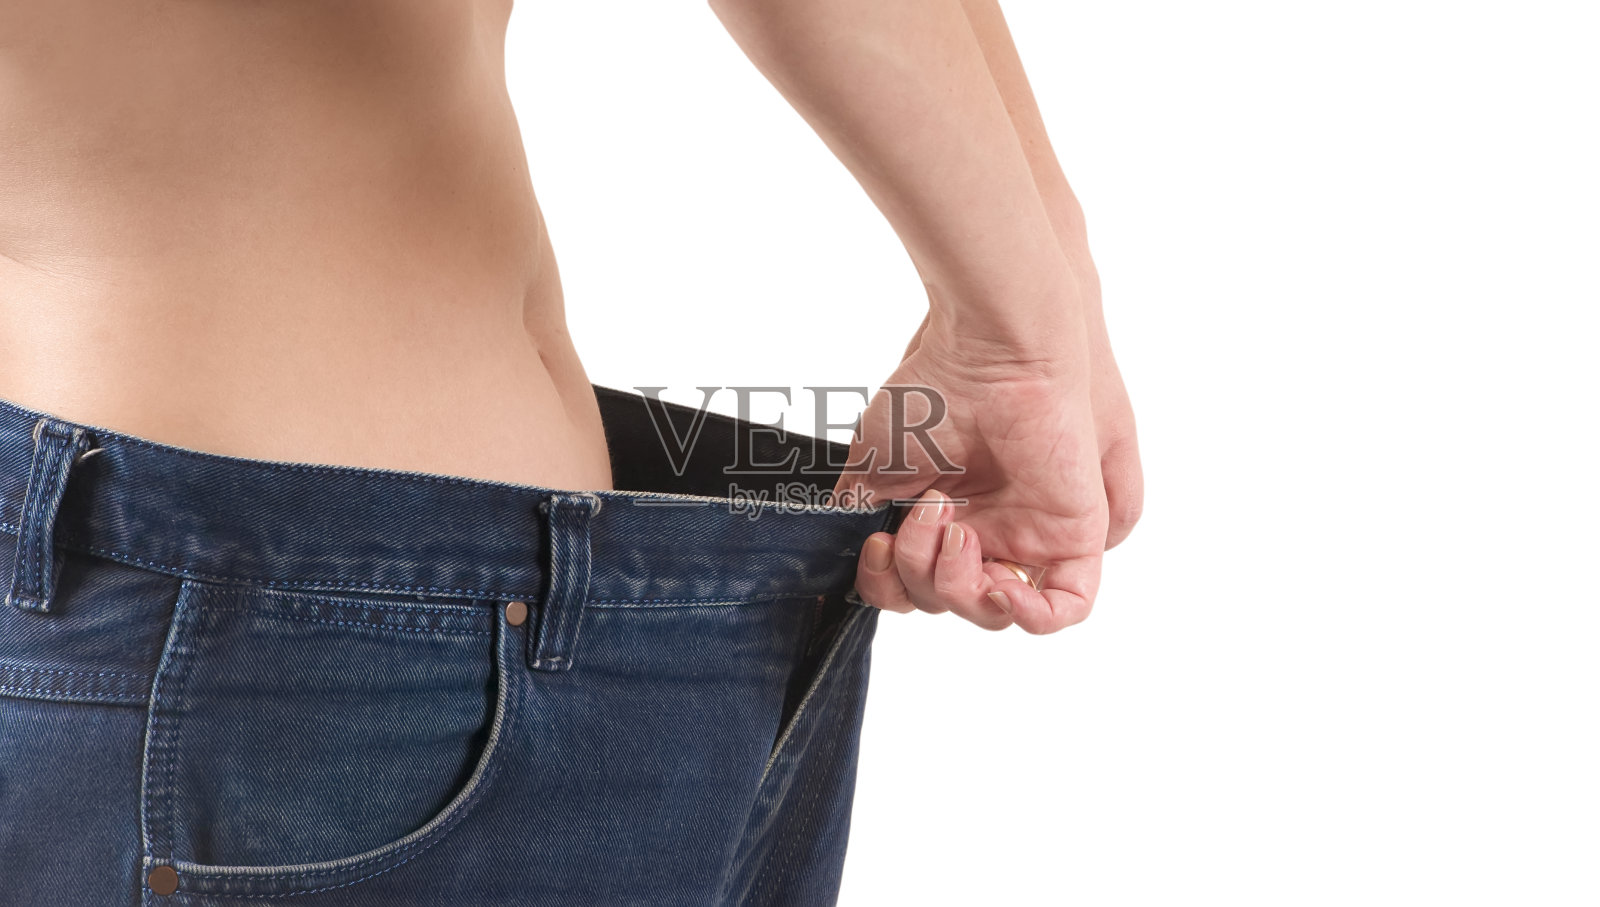 一位女士穿了一条旧的大裤子以示减肥。减肥的概念照片摄影图片